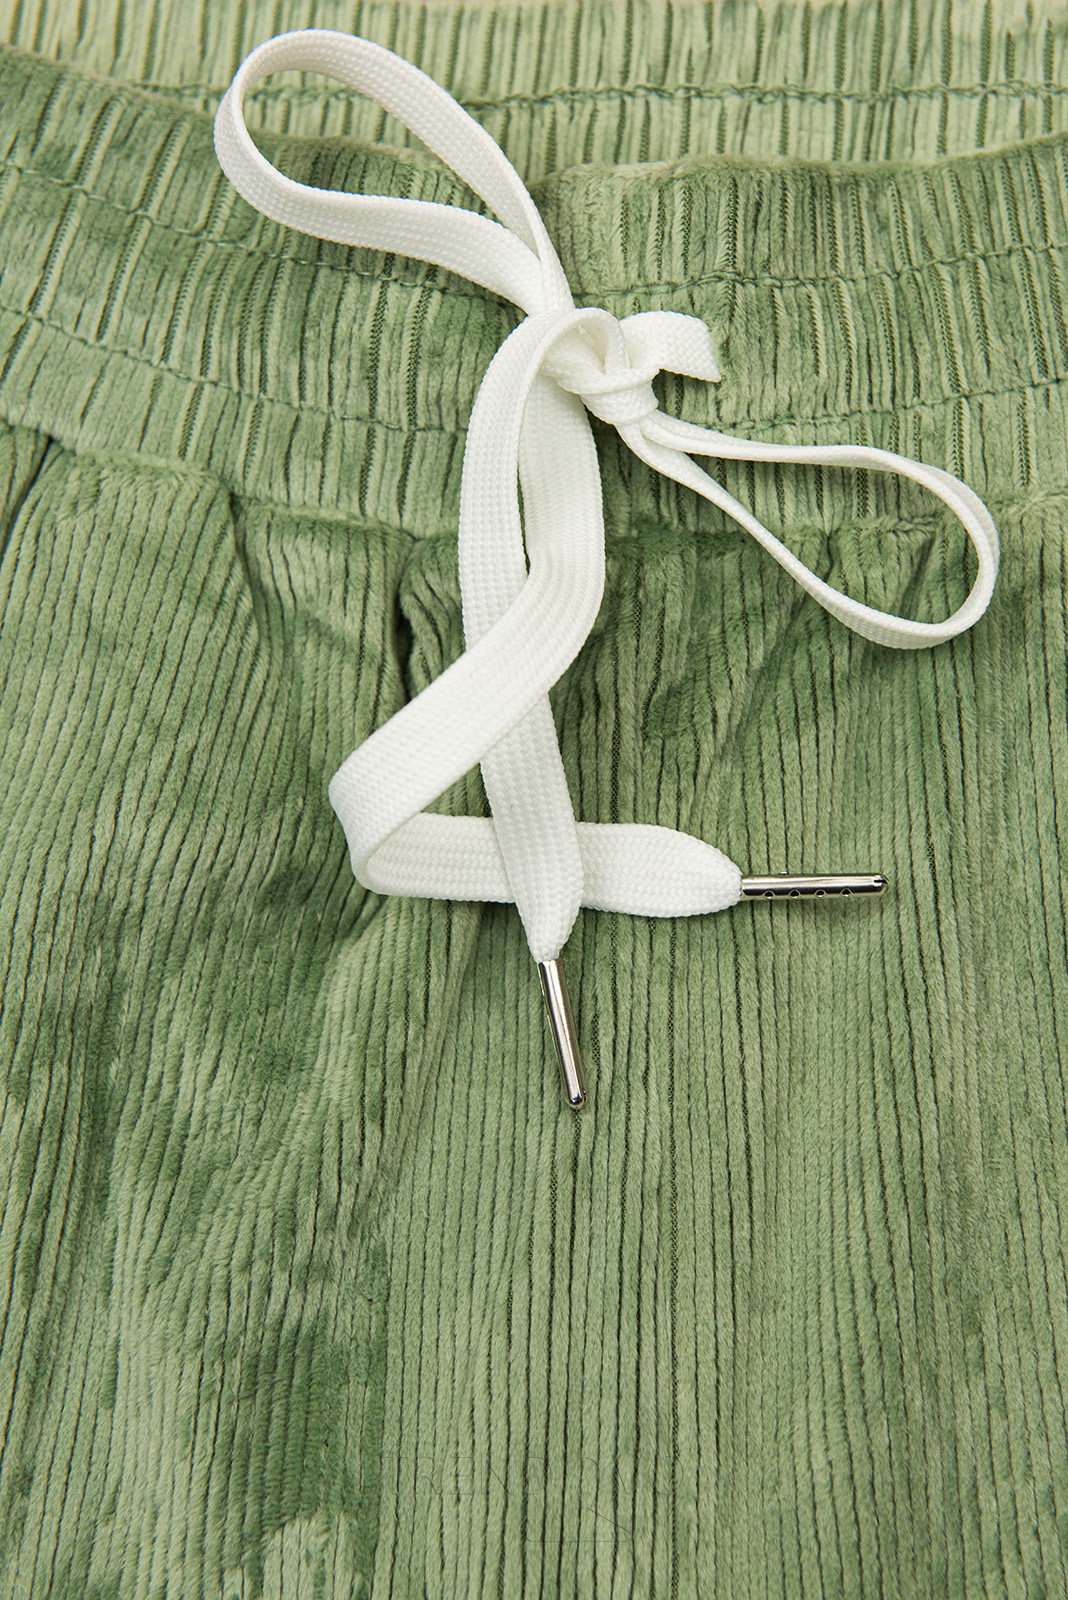 Zelené ležérne nohavice s menčestrovým vzorom